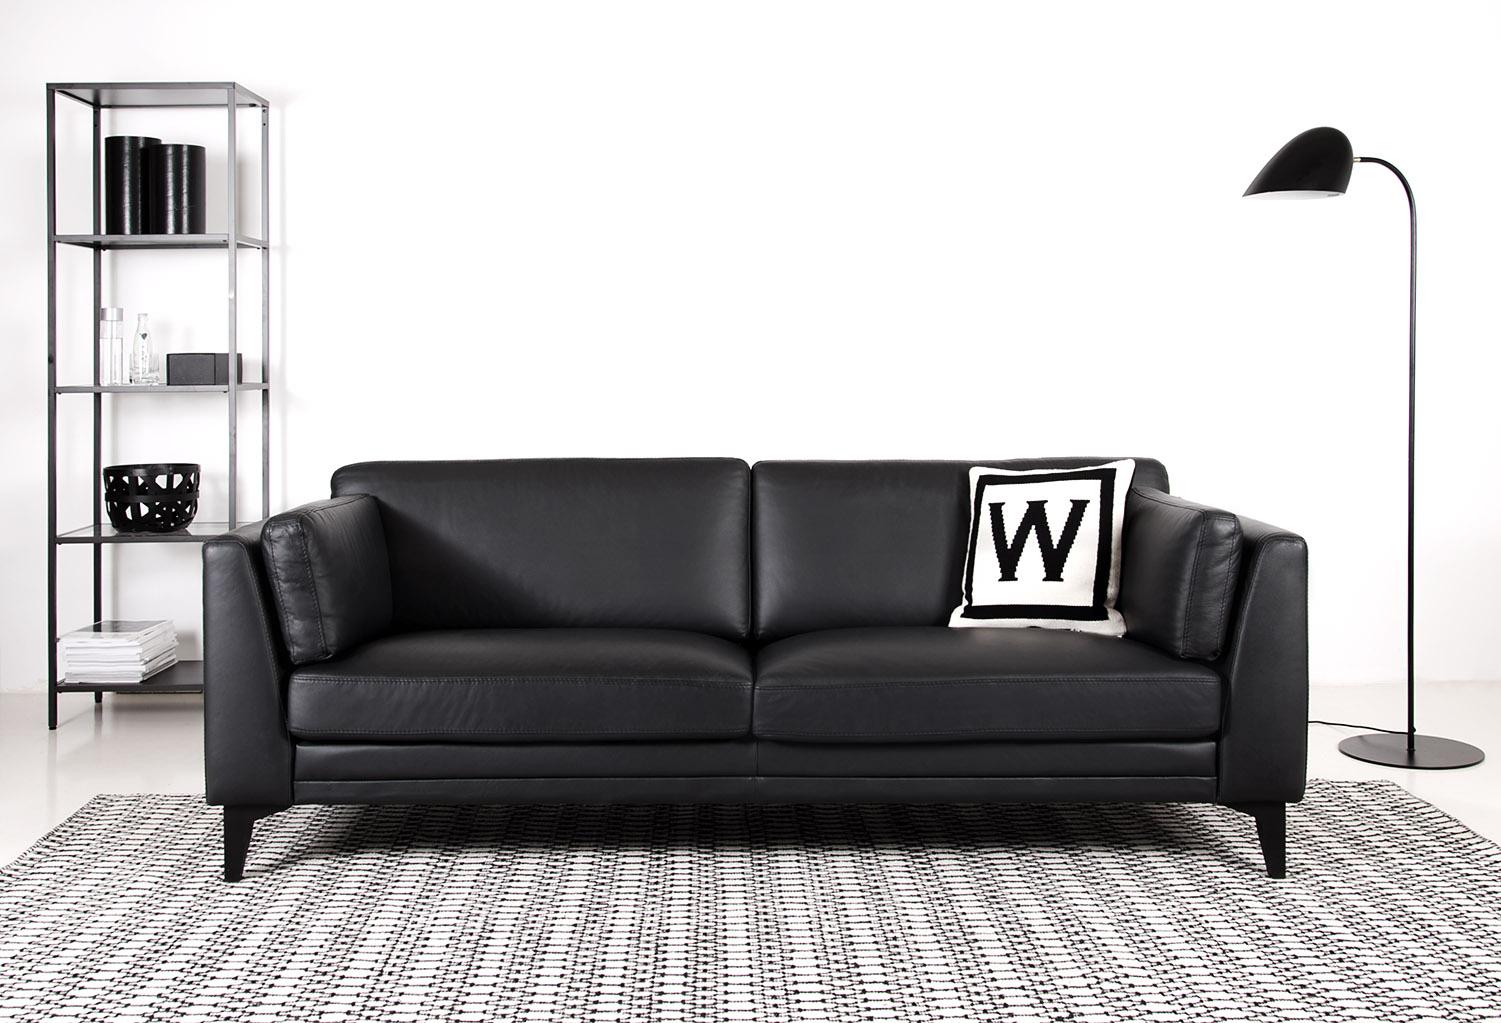 Modernes Leder-Sofa "Village" #ledersofa #sofa #minimalistisch #skandinavischesdesign ©Von Wilmowsky